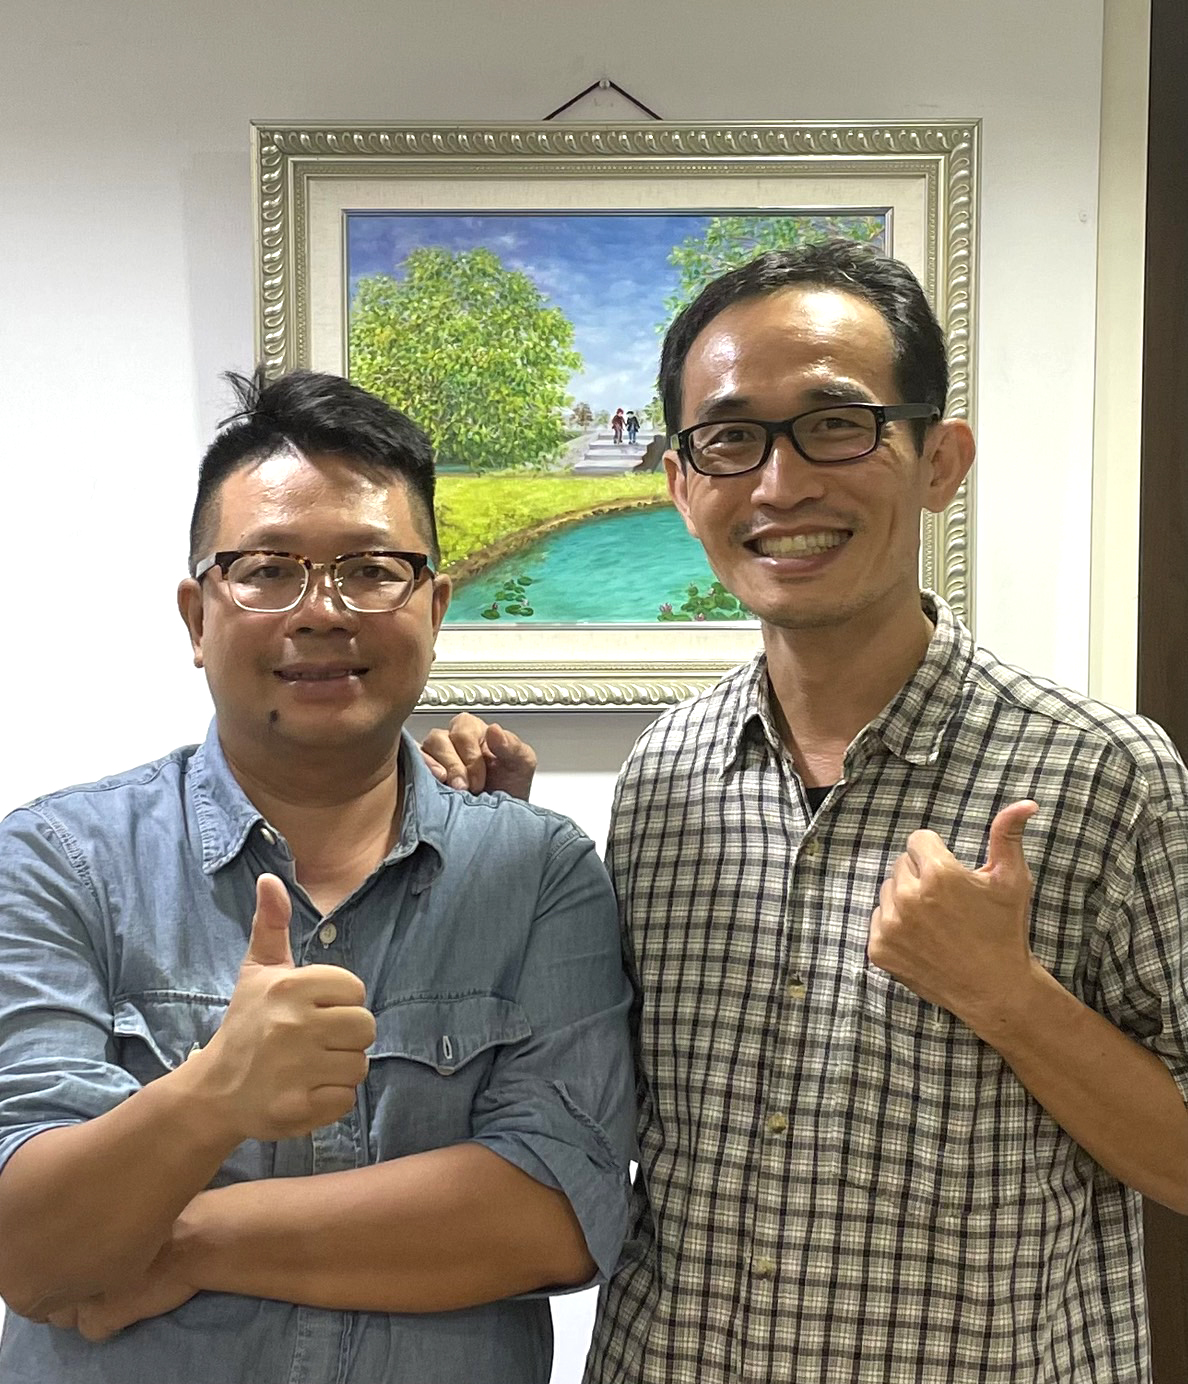 中 華 雅 博 優 秀 青 年 會 林 倉 亙 理 事 長 ( 右 ) 來 訪 ， 對 於 舉 辦 適 合 當 代 青 年 的 活 動 做 出 充 分 交 流 ！ 